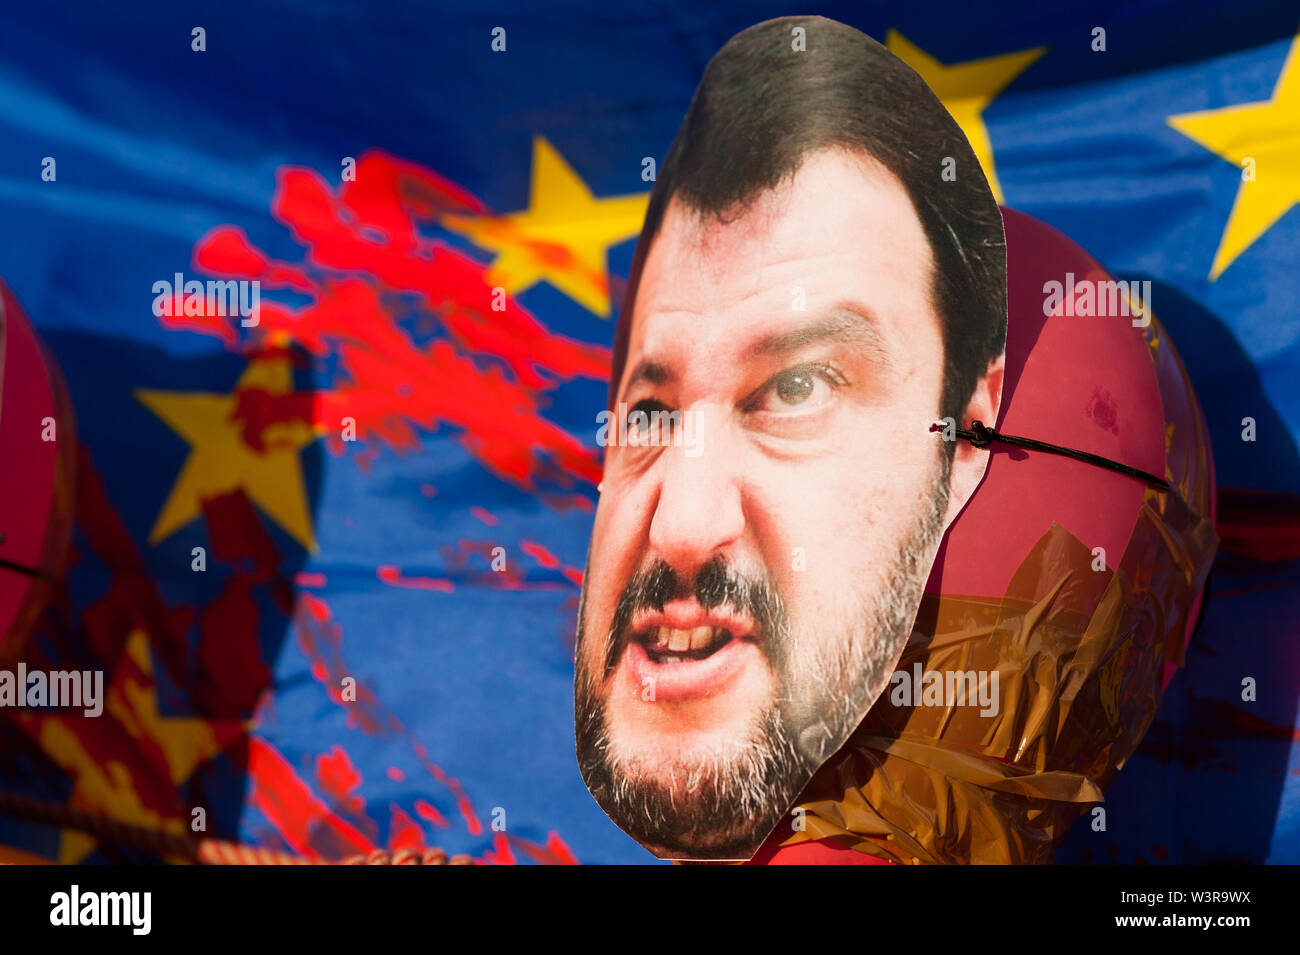 Barcelone, Espagne- 17 juillet 2019 : dummy de Matteo Salvini face avec drapeau de l'Union européenne en arrière-plan avec des taches de sang rouge en mars contre l'immigration Banque D'Images